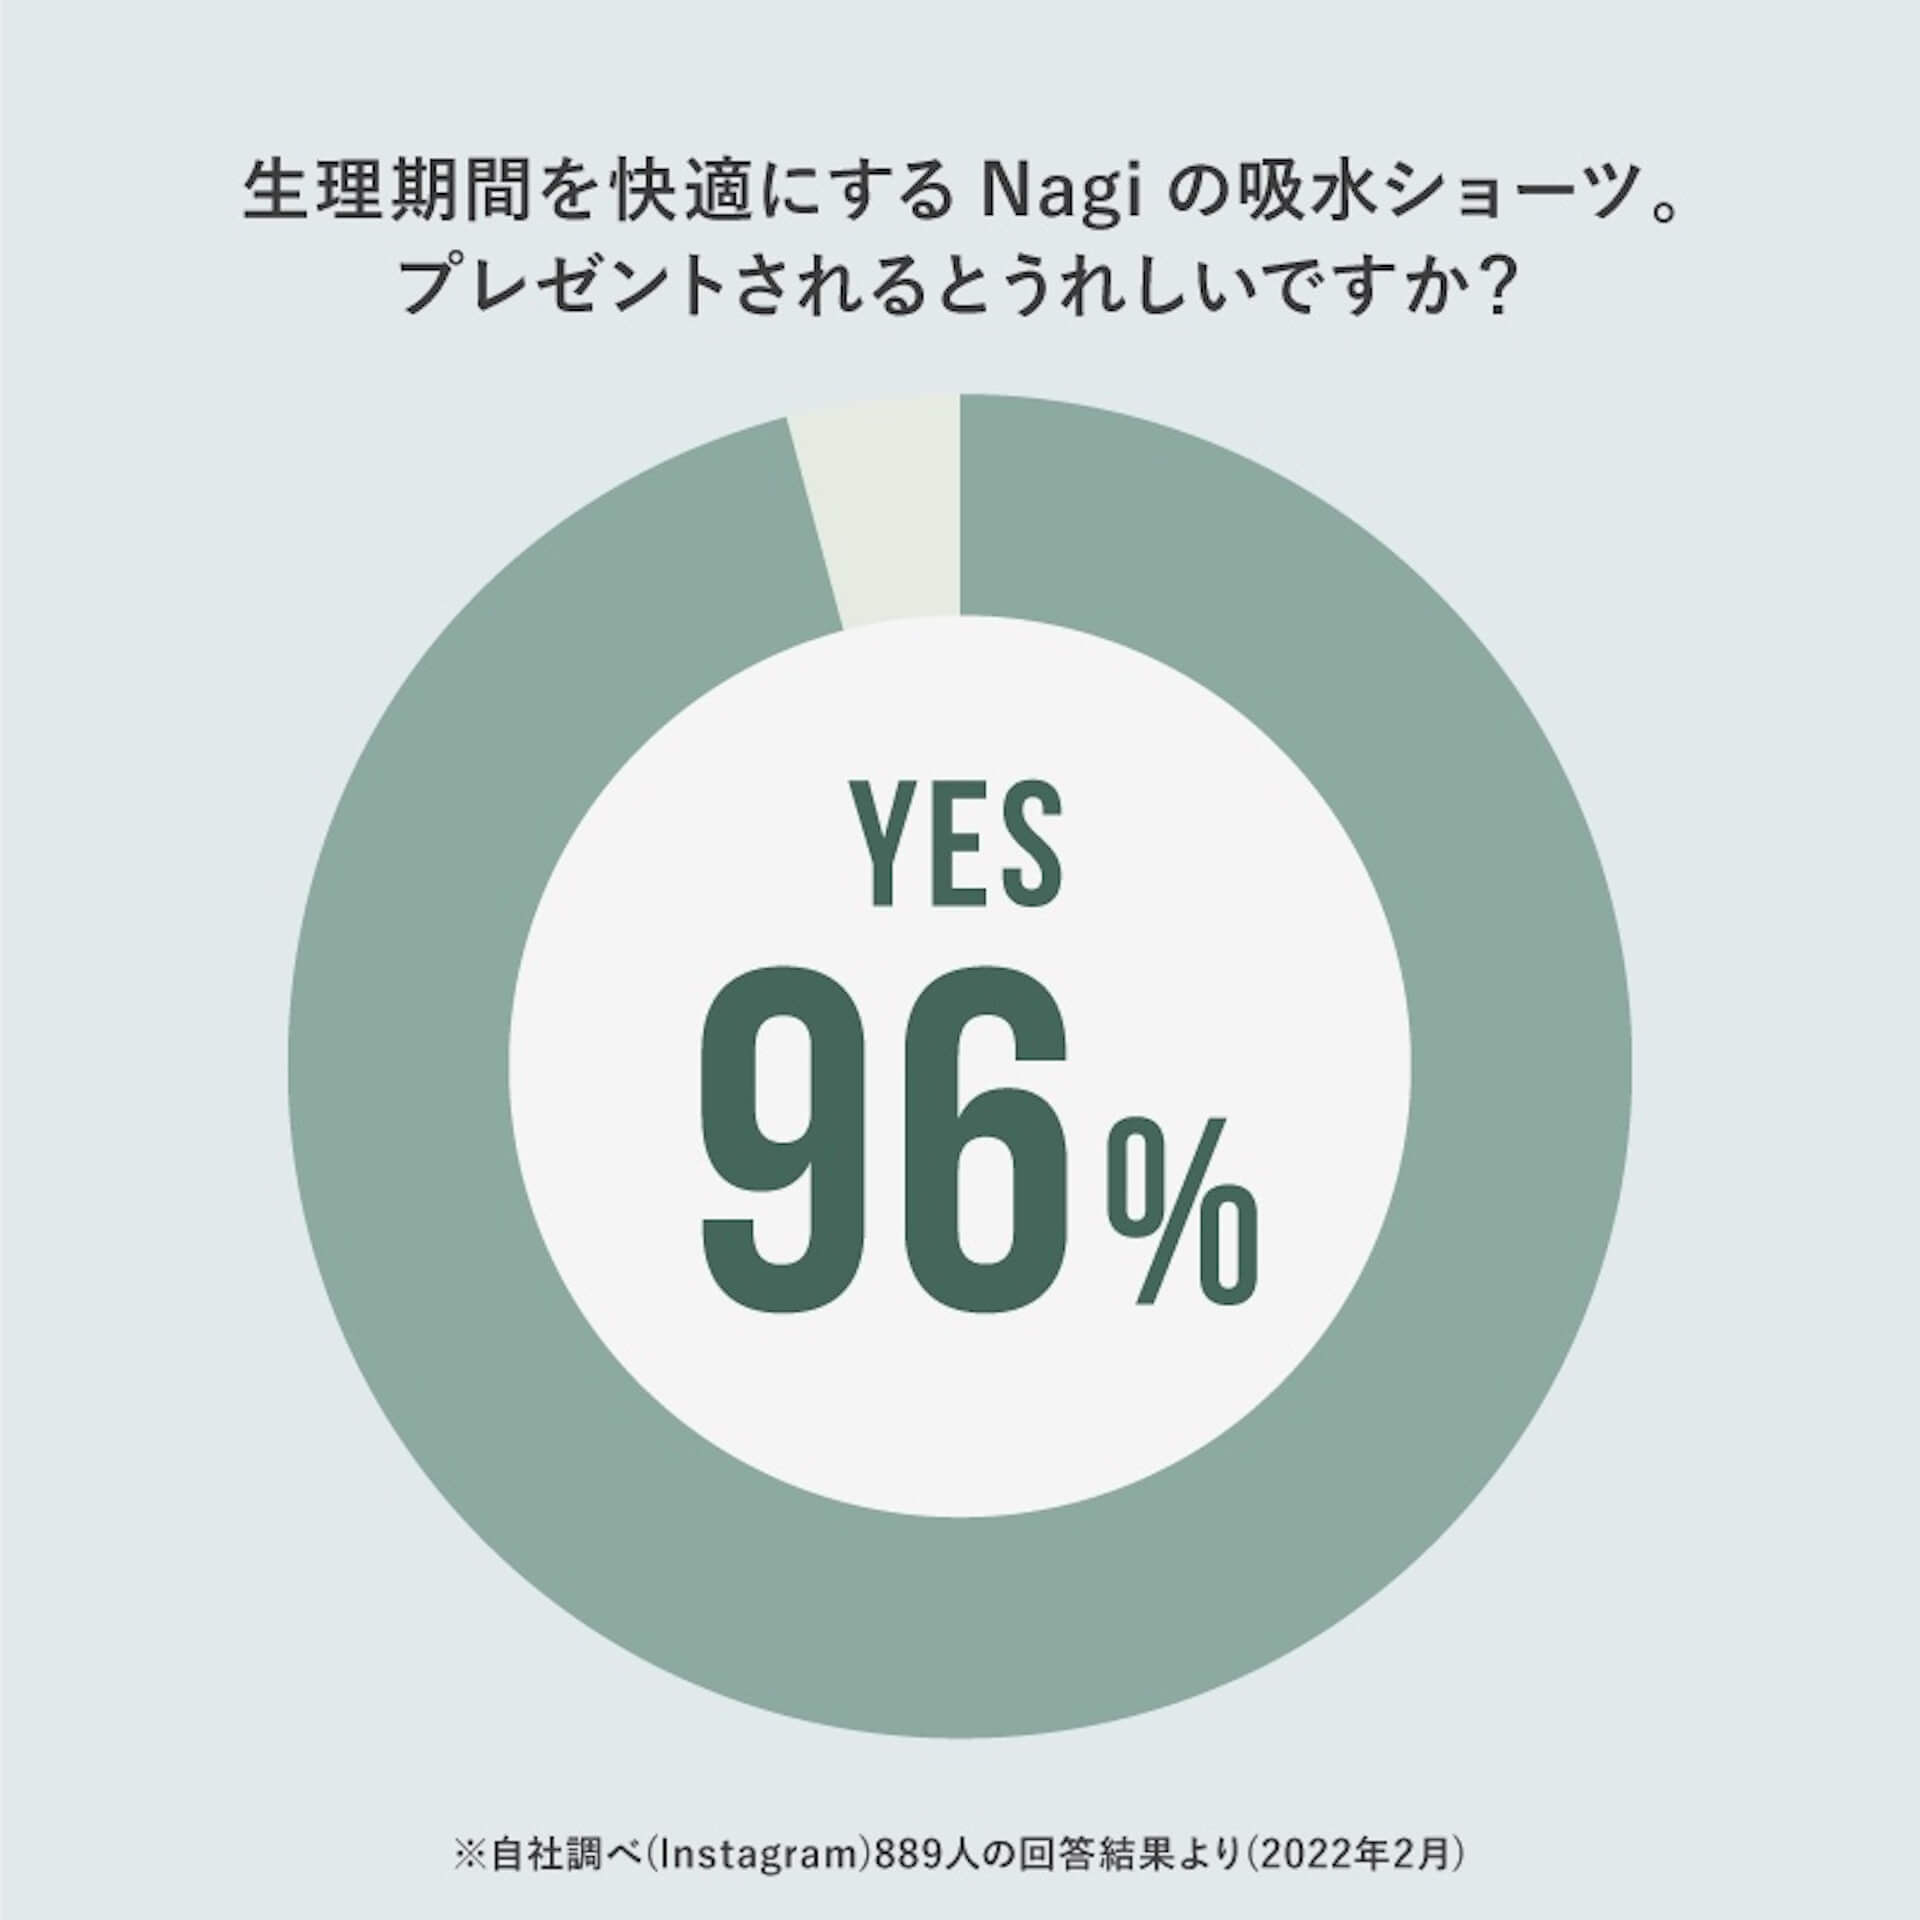 フェムテックブランド・Nagiがホワイトデー期間限定ギフトをリリース｜96%の女性たちが、吸水ショーツをプレゼントされるとうれしいと回答 fashion220307_nagi-giftcard-03